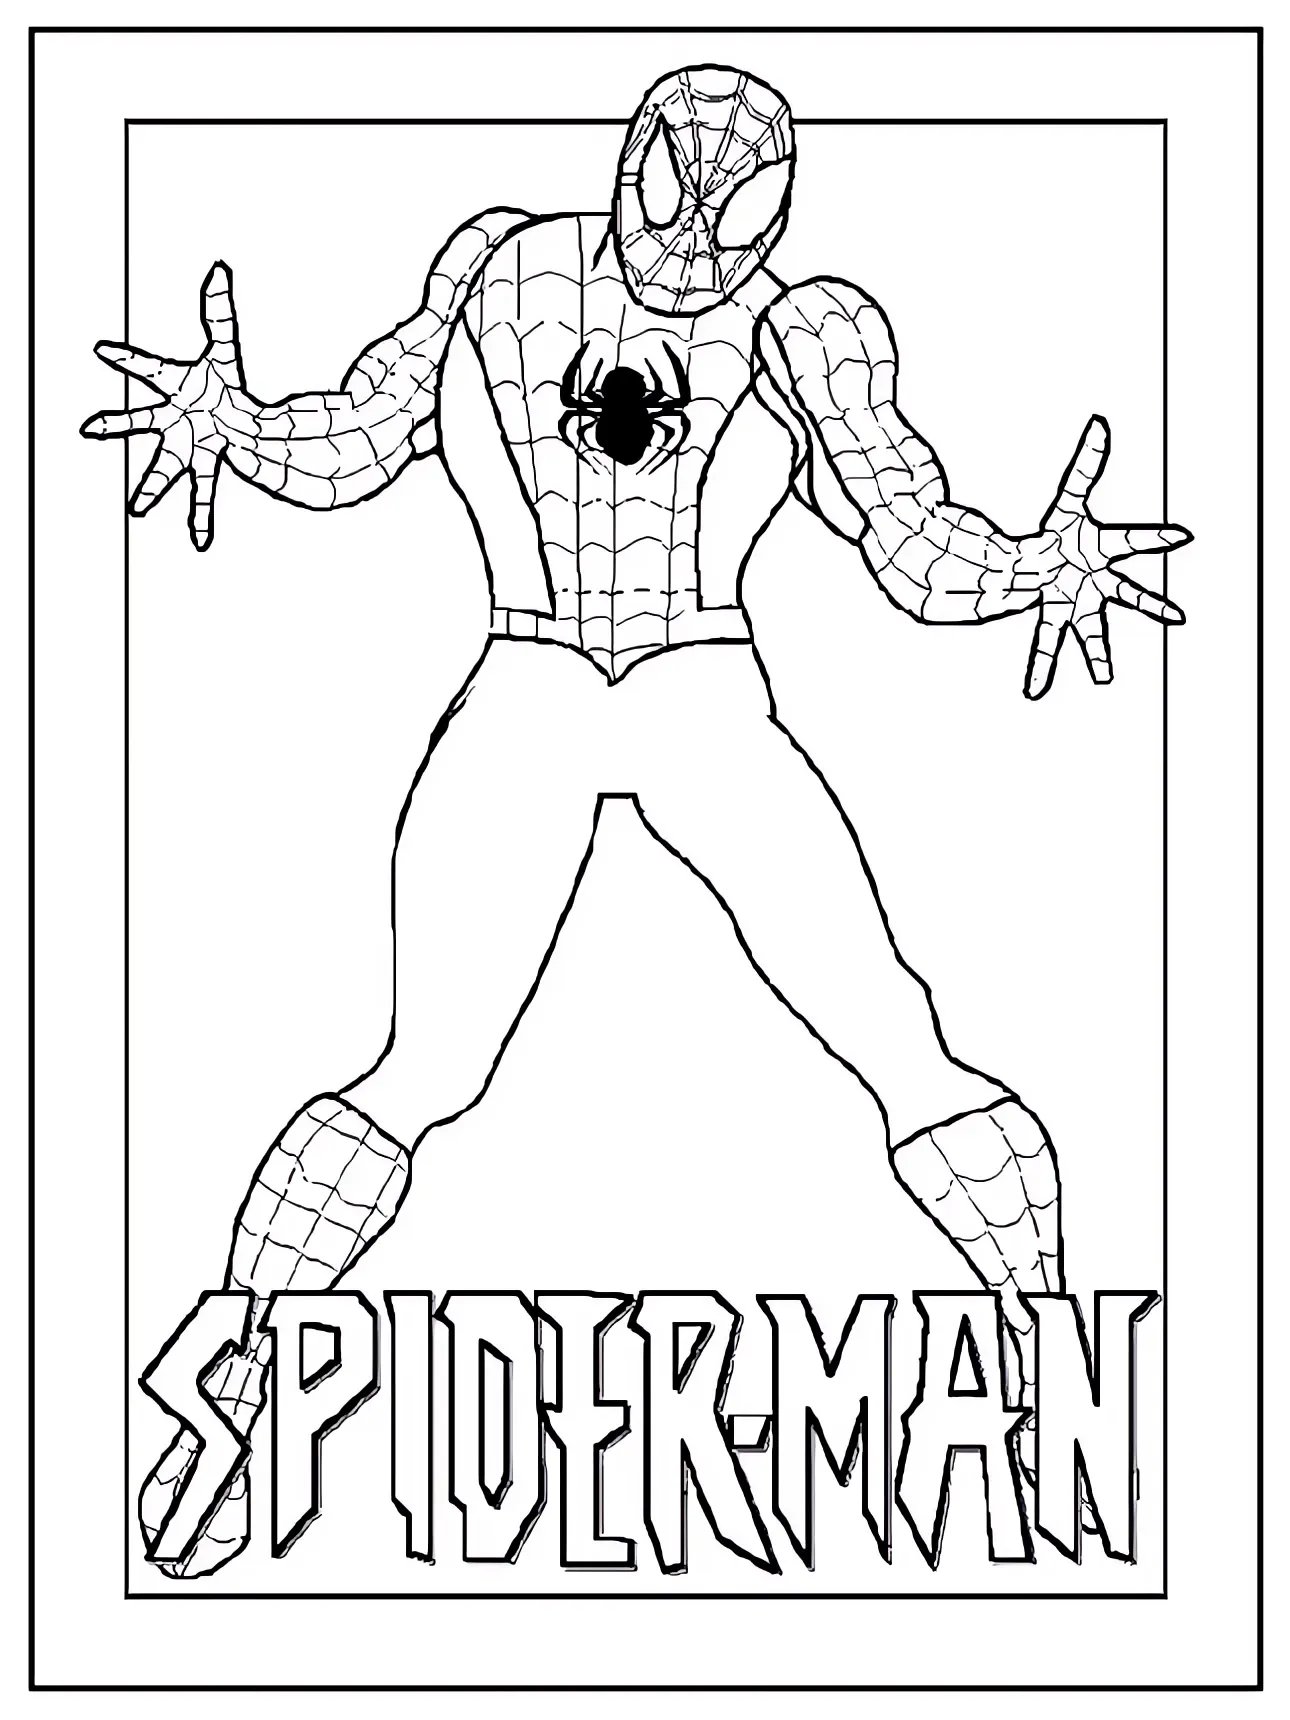 Disegno di Spiderman a figura intera da stampare e colorare 